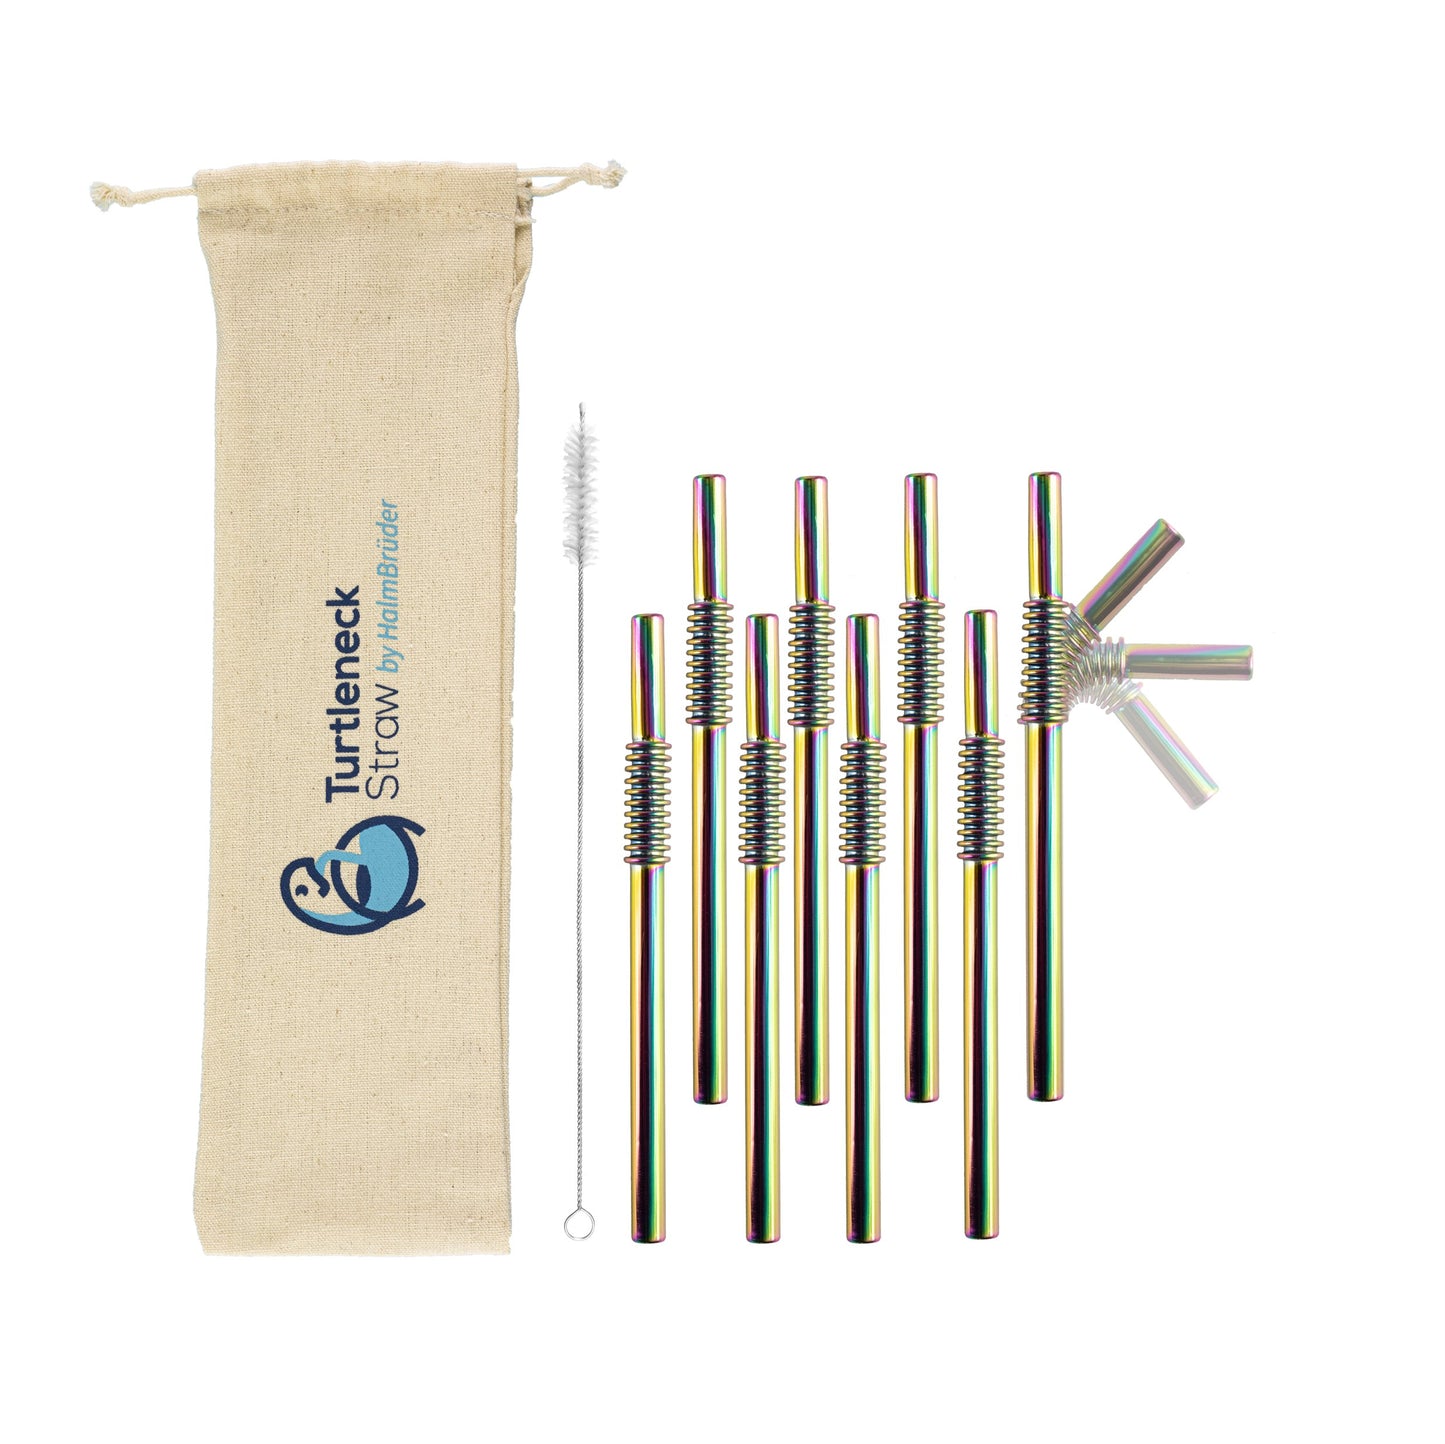 
                  
                    Biegsamer Trinkhalm aus Edelstahl - Turtleneck® Straw, Kurz 15 cm - HalmBrüder - Turtleneck Straw, biegsame Edelstahl Strohhalme
                  
                